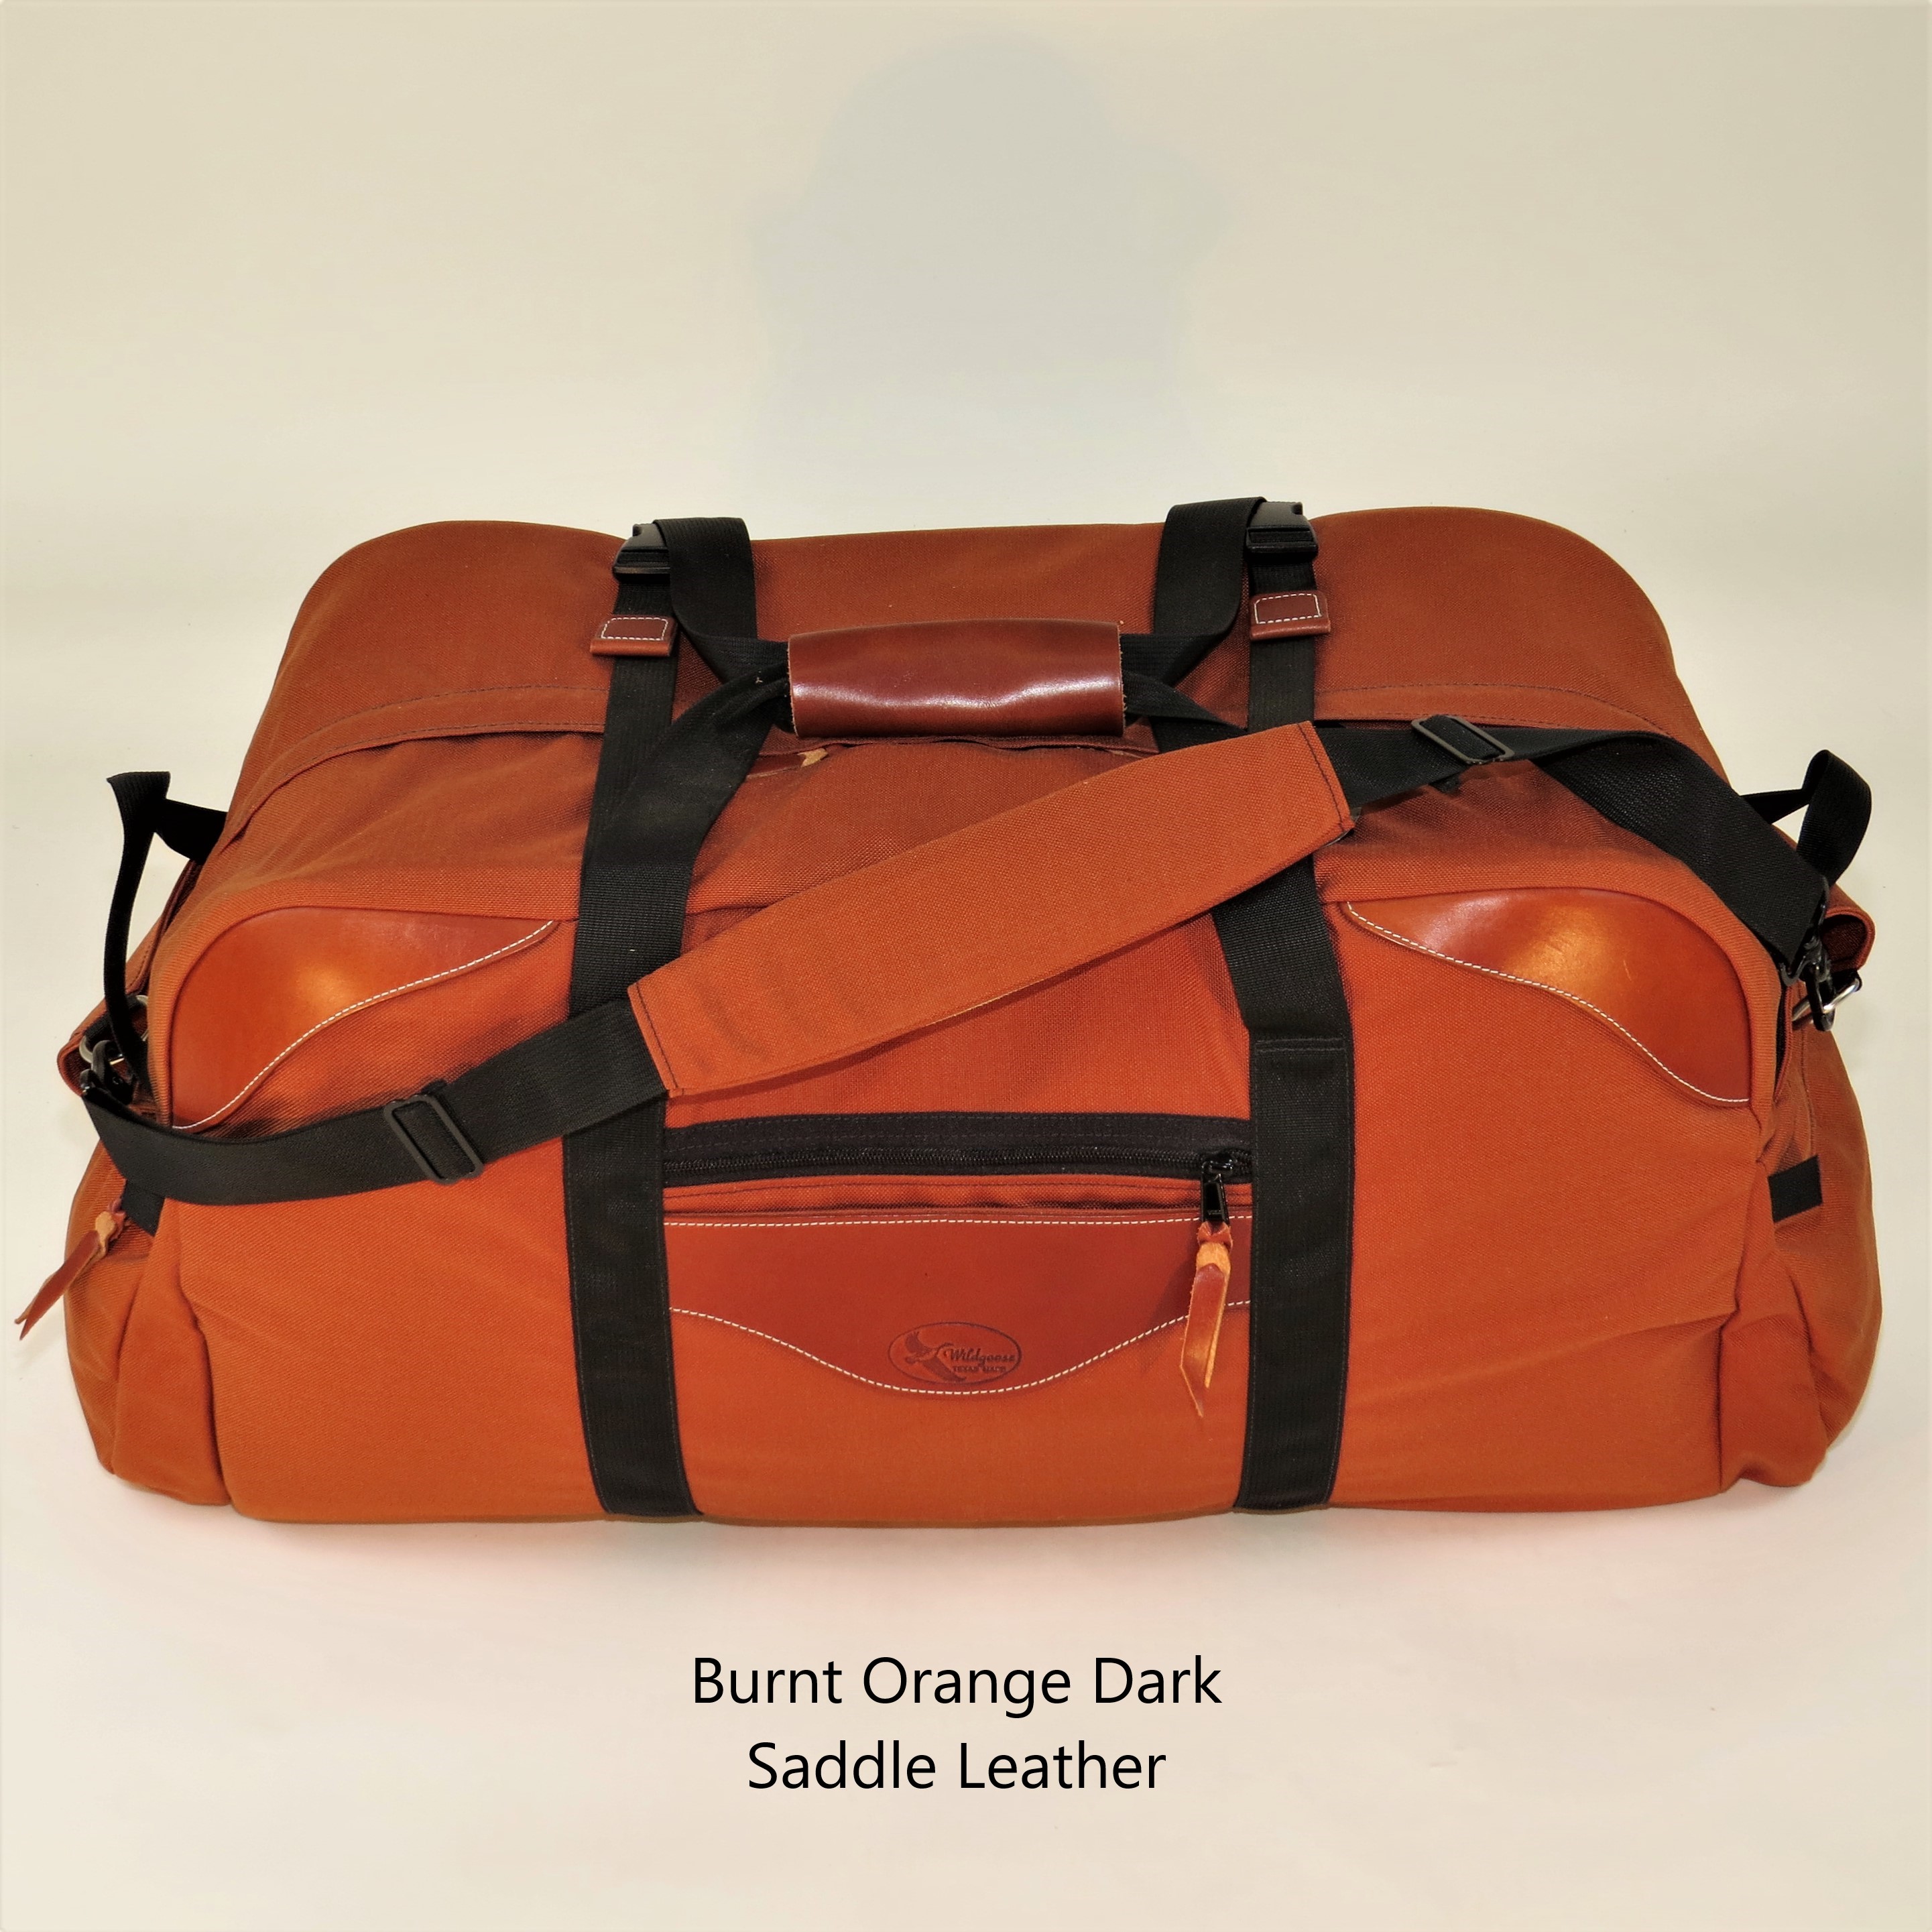 Cargo Luggage - Medium Original with Leather Trim